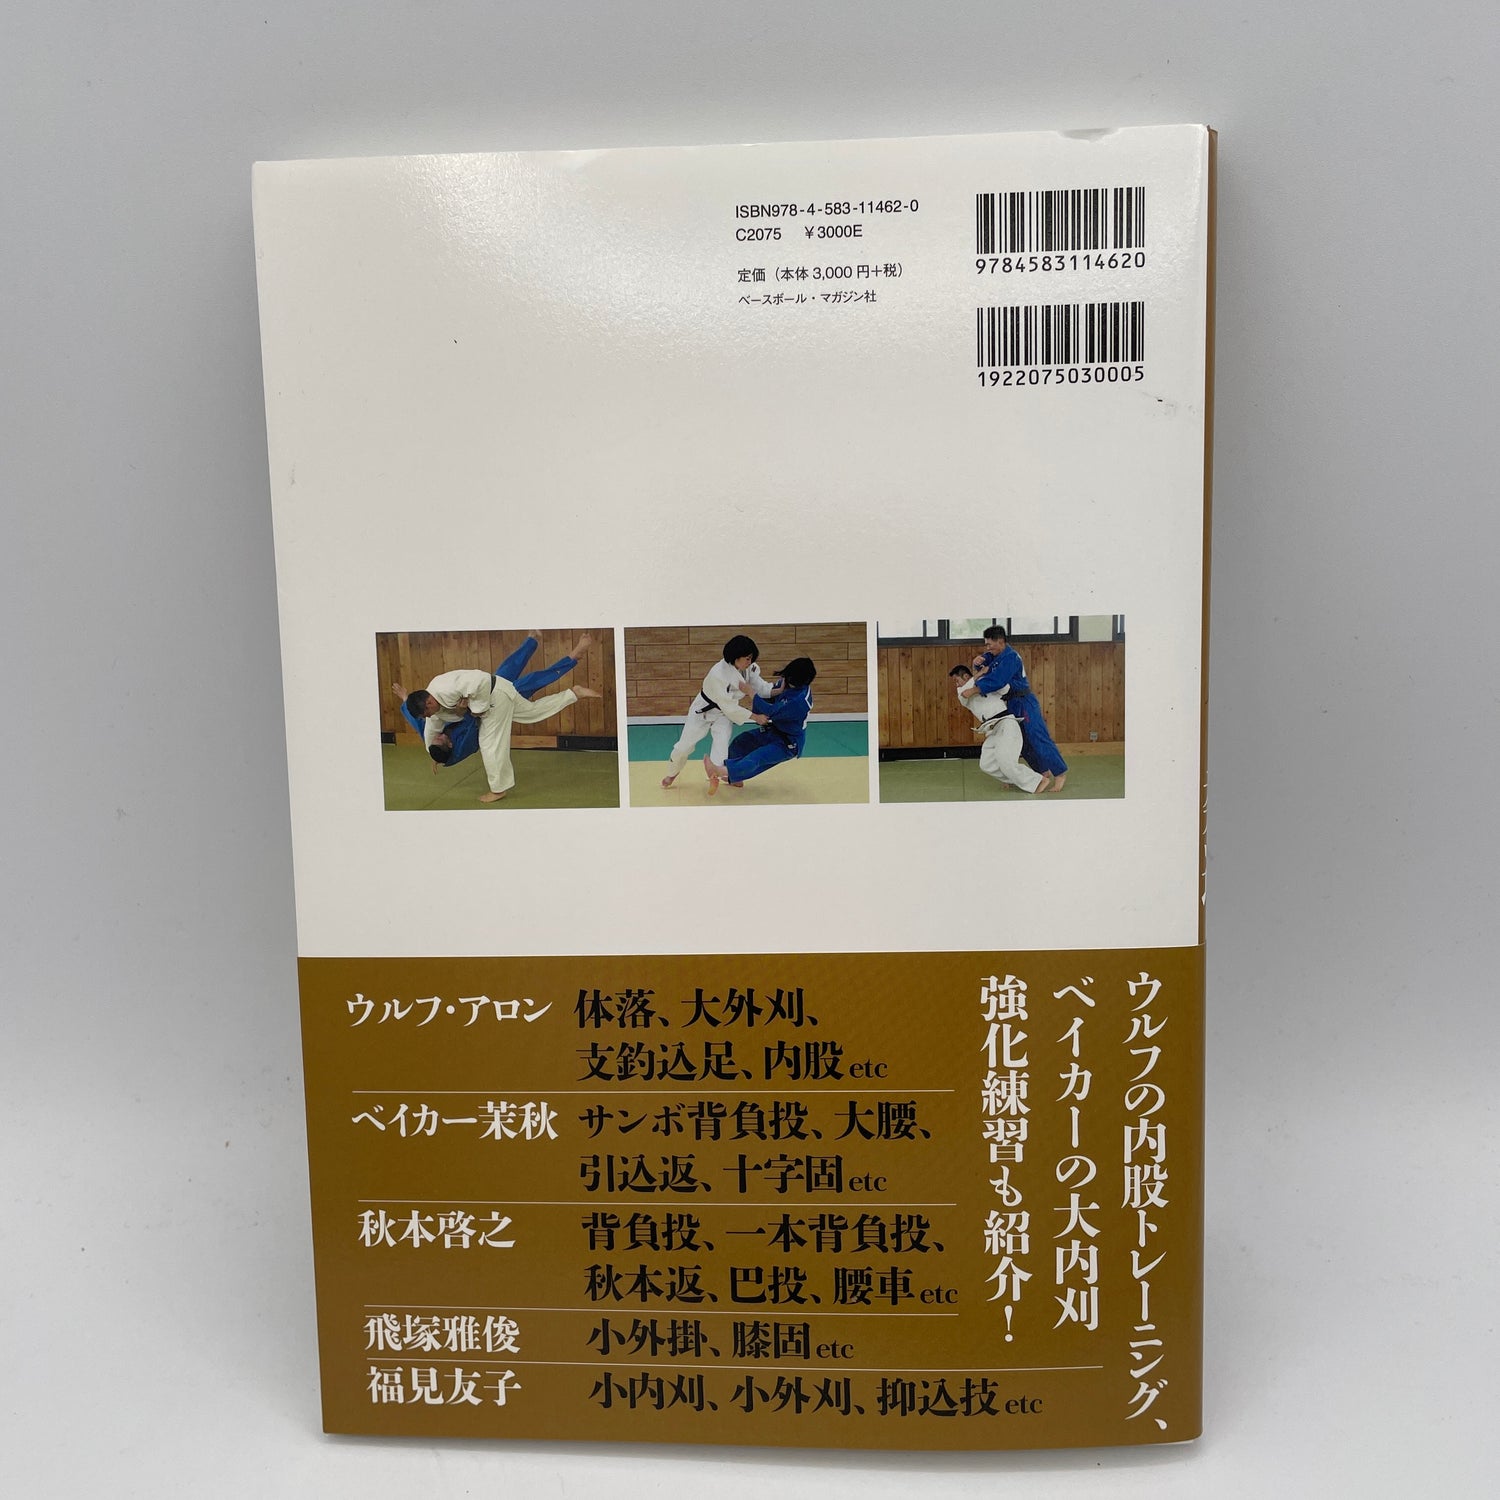 Libro de los secretos del judo mundial para ganar (con códigos QR)